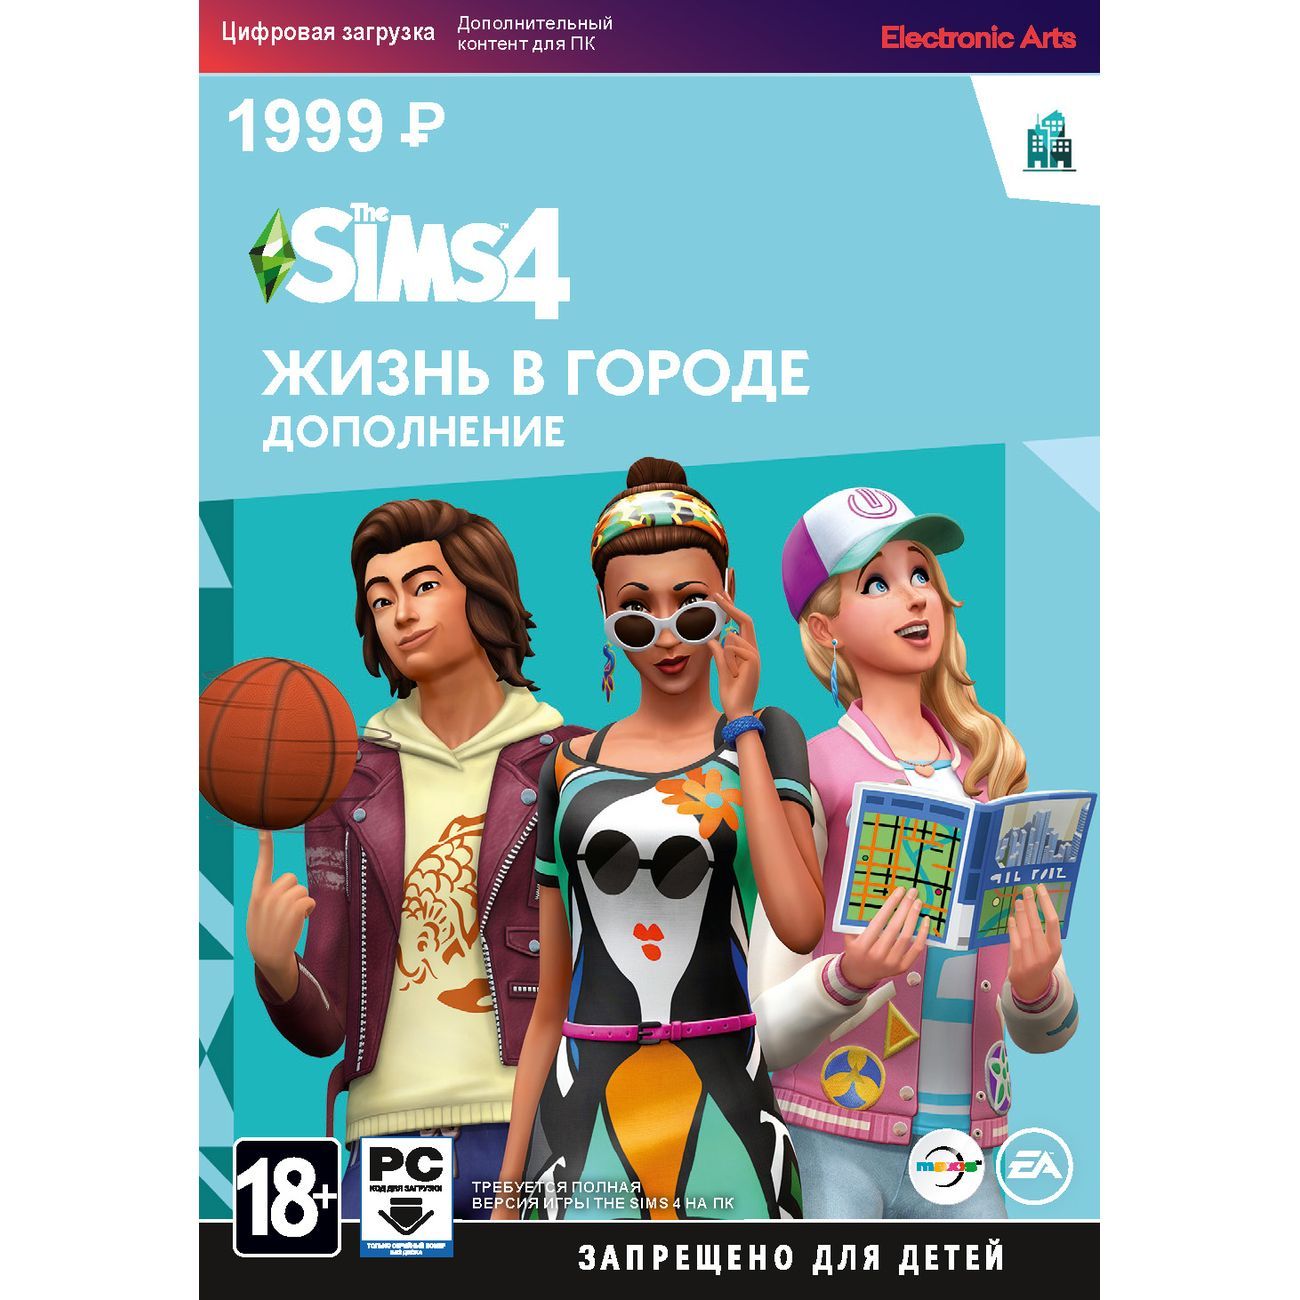 Моды для Симс 4 - скачать бесплатно моды для Sims 4 - Страница 2